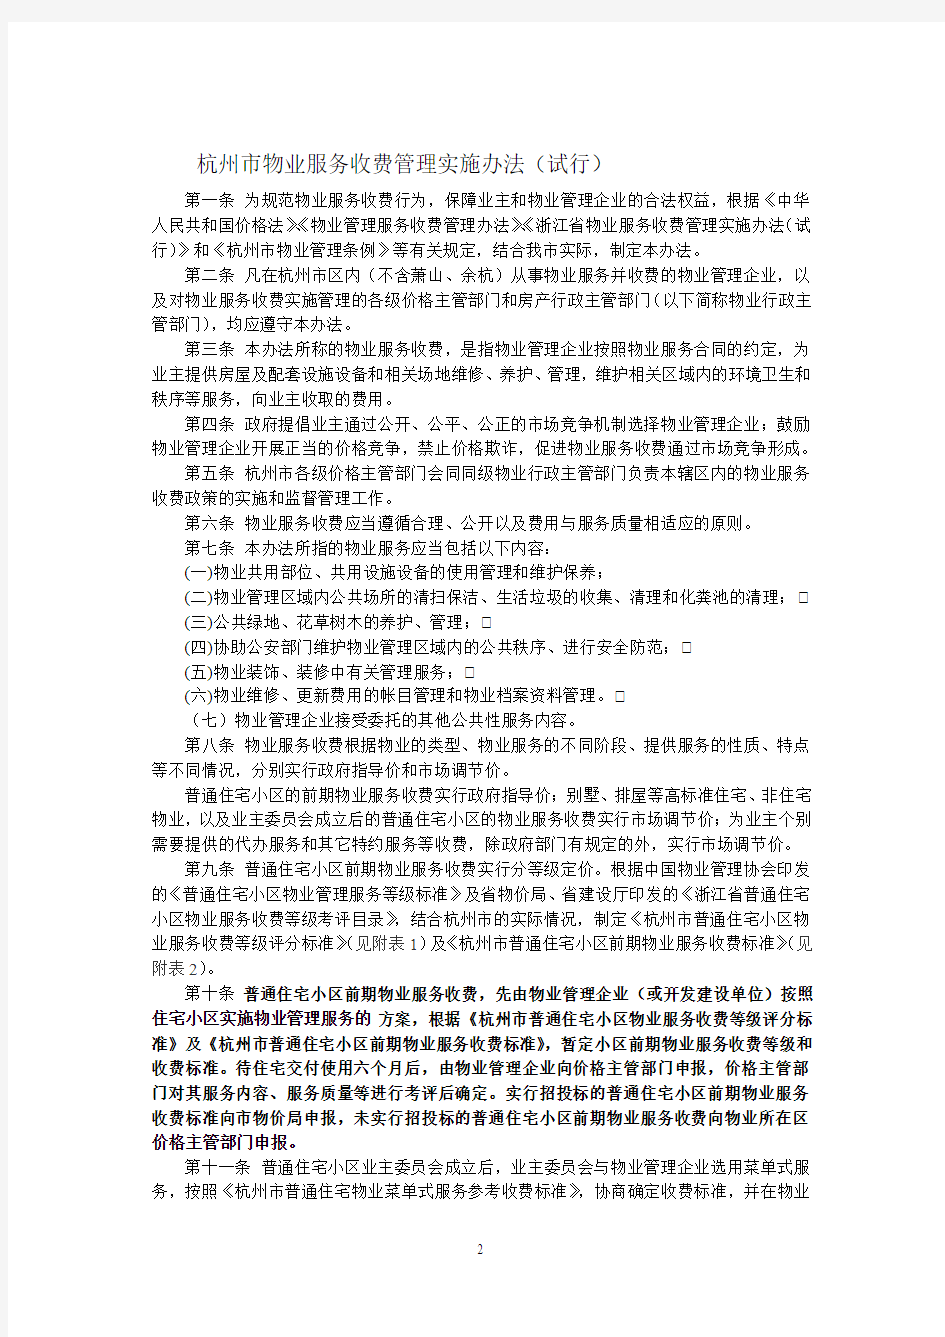 关于印发《杭州市物业服务收费管理实施办法(试行)》的通知